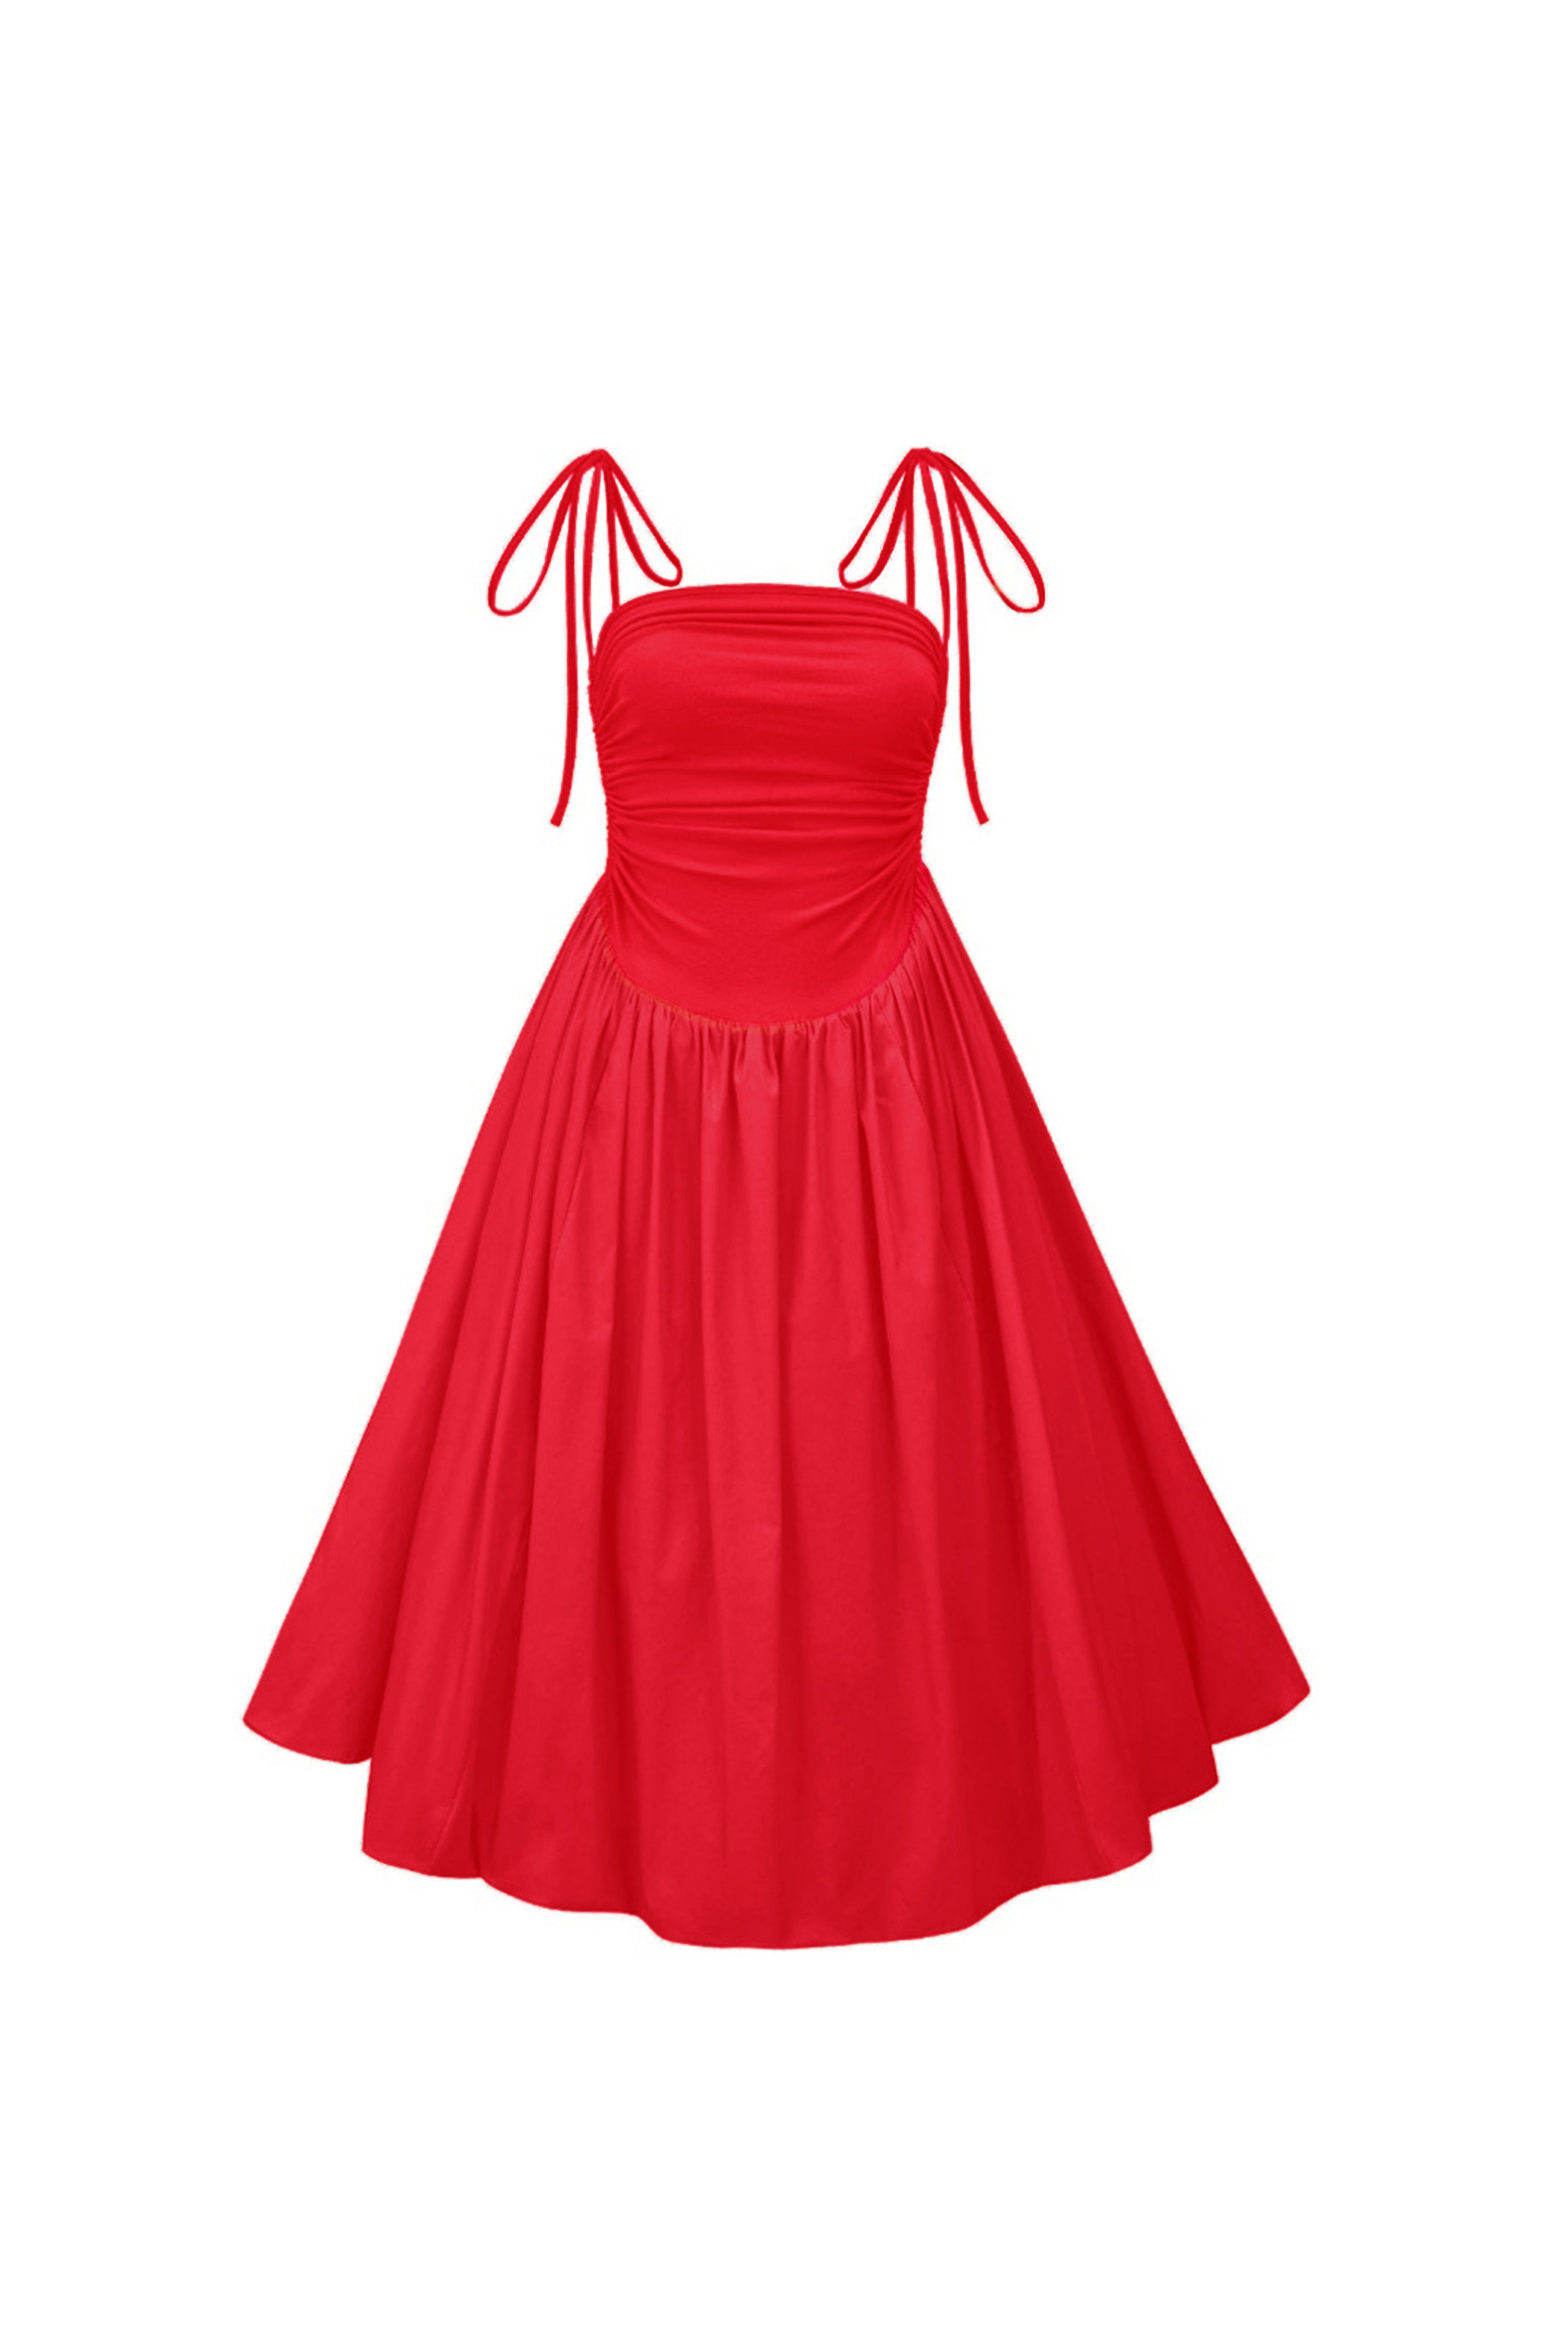 Amy Lynn Women's Alexa Cherry Red Puffball Dress